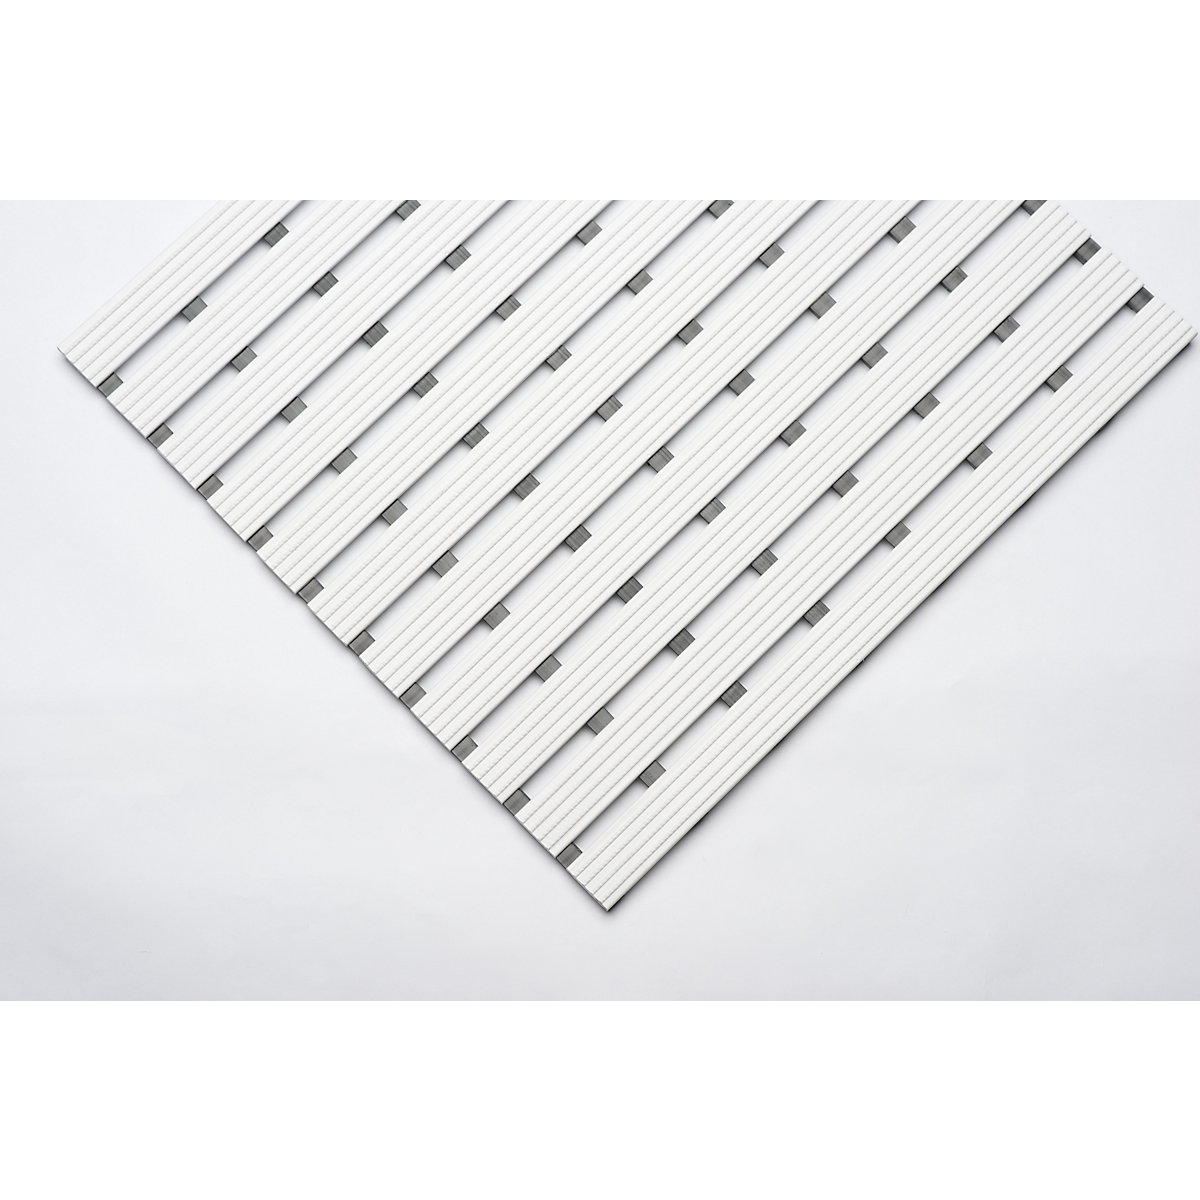 PVC profile matting, per metre - EHA